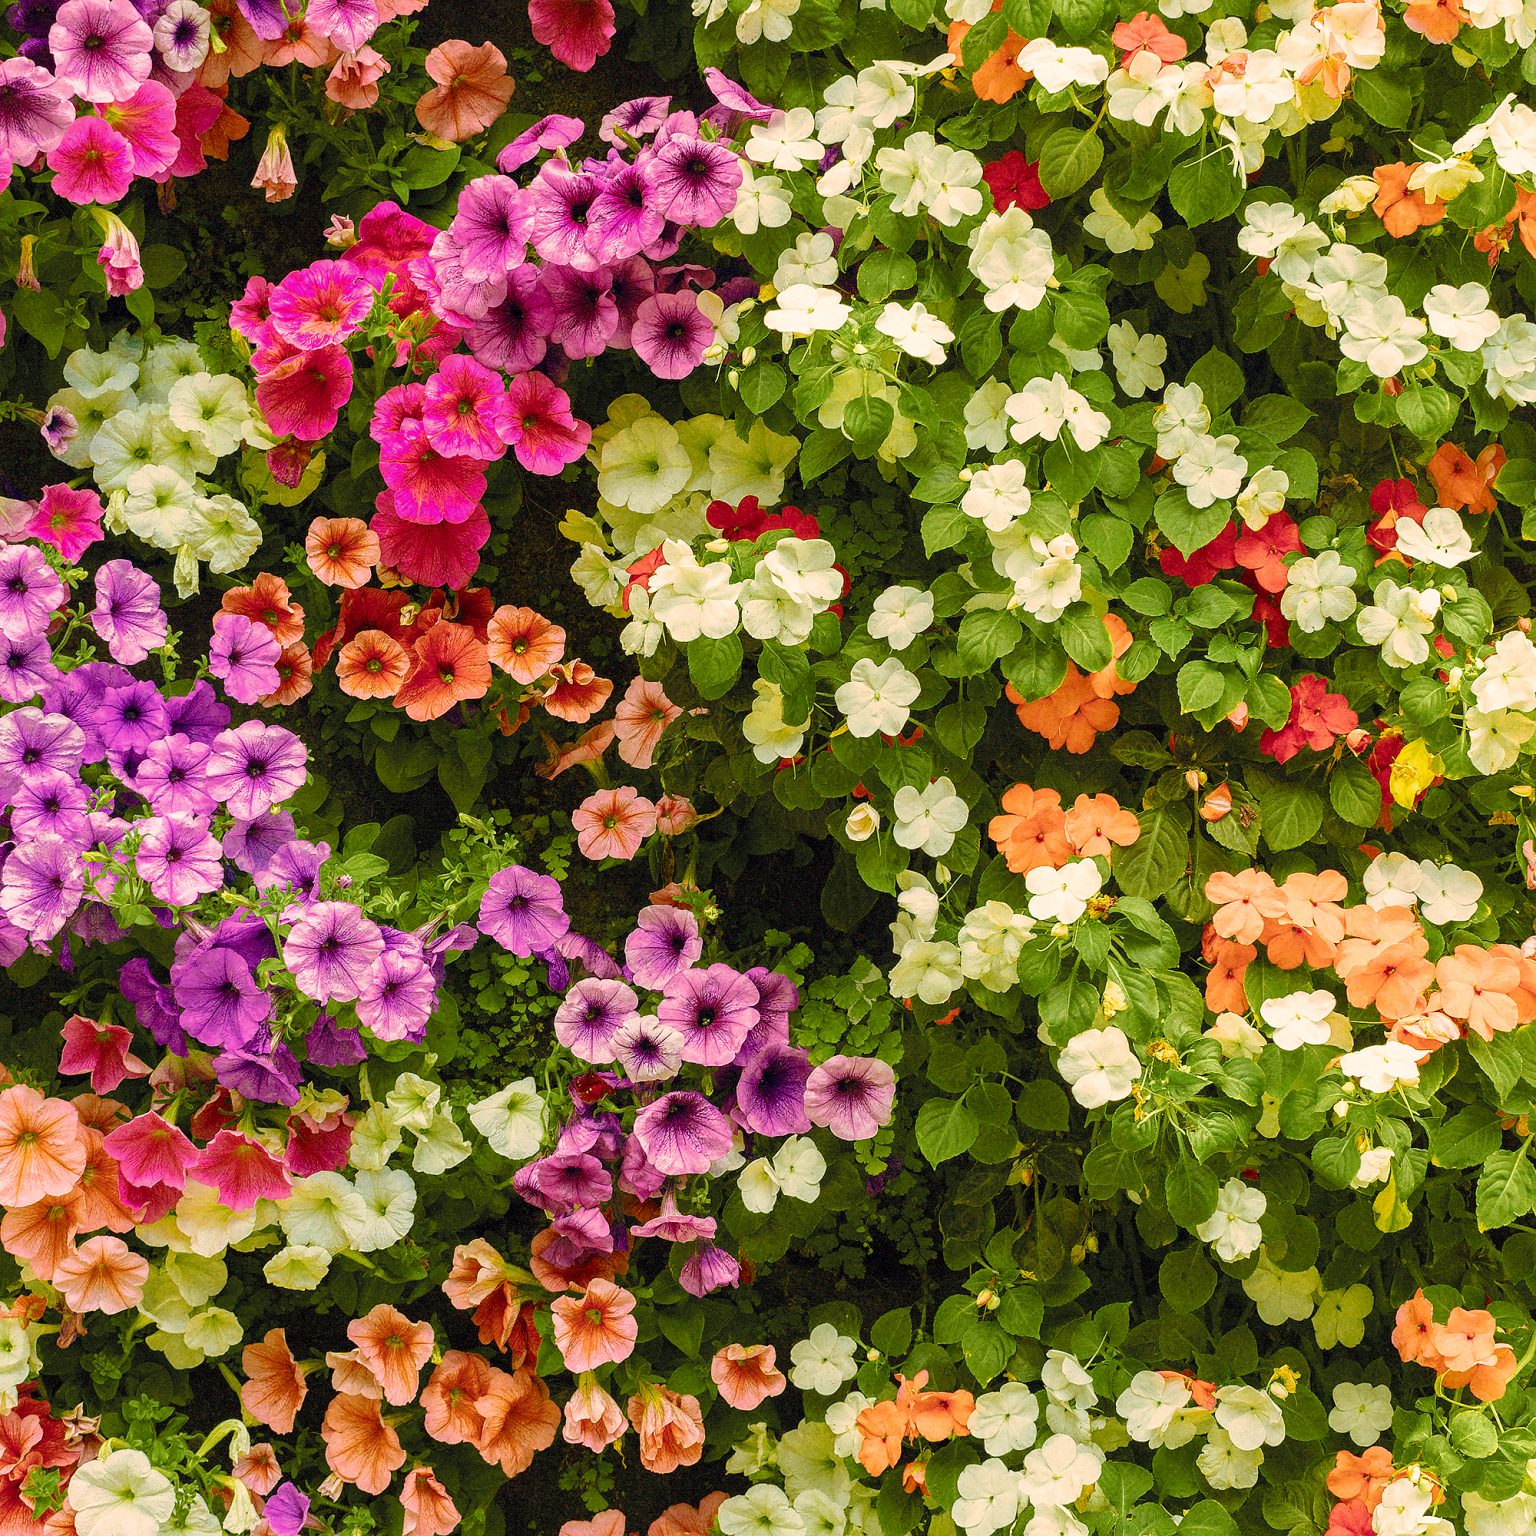 Floral Design Day Social Media Events